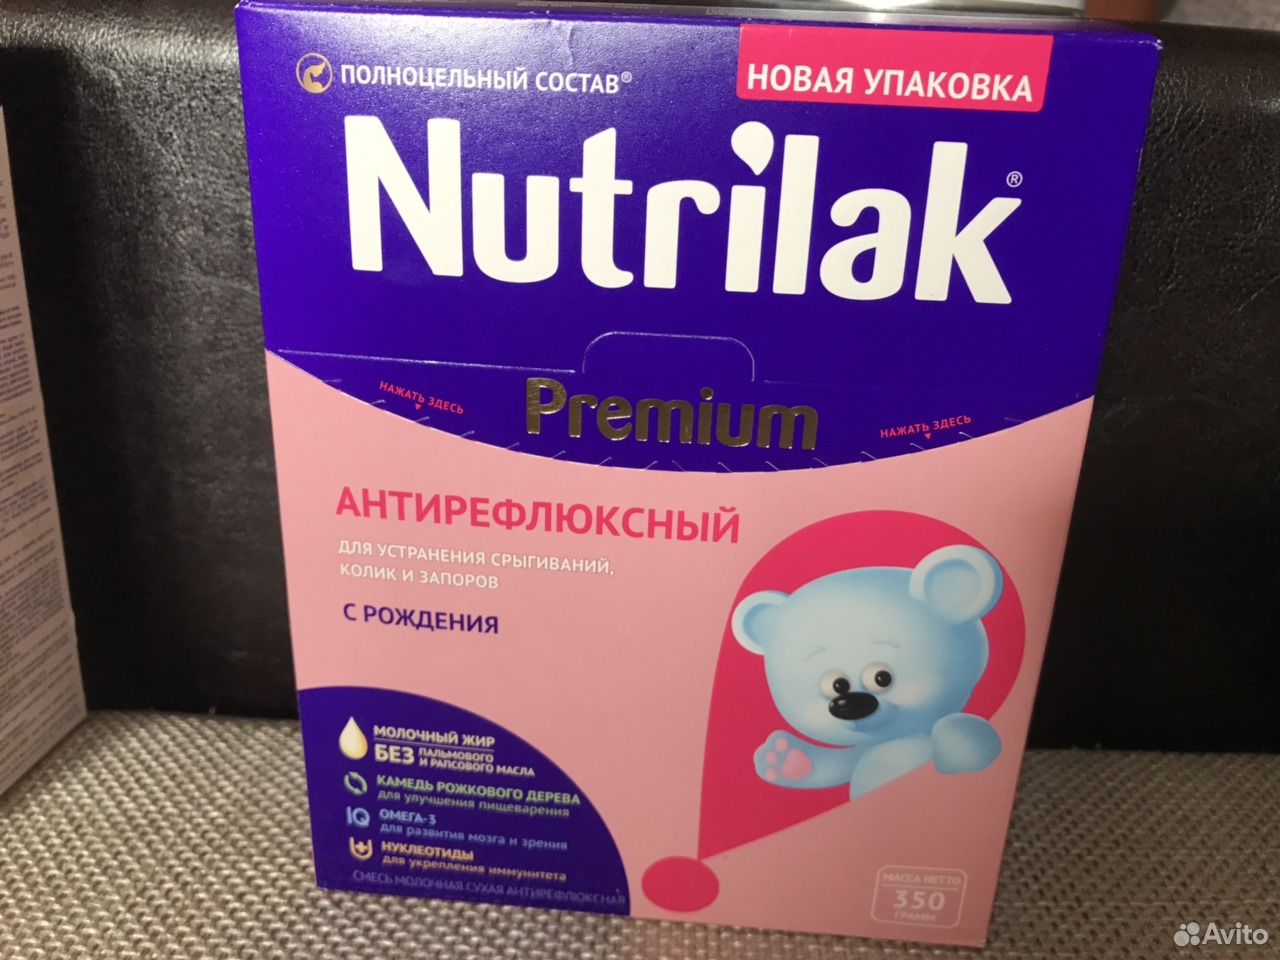 Нутрилак антирефлюксный. Нутрилак (Nutrilak) Premium антирефлюксный 6 уп. Антирефлюксная смесь для новорожденных Нестожен. Нутрилак антирефлюксный состав. Малютка антирефлюксная смесь.